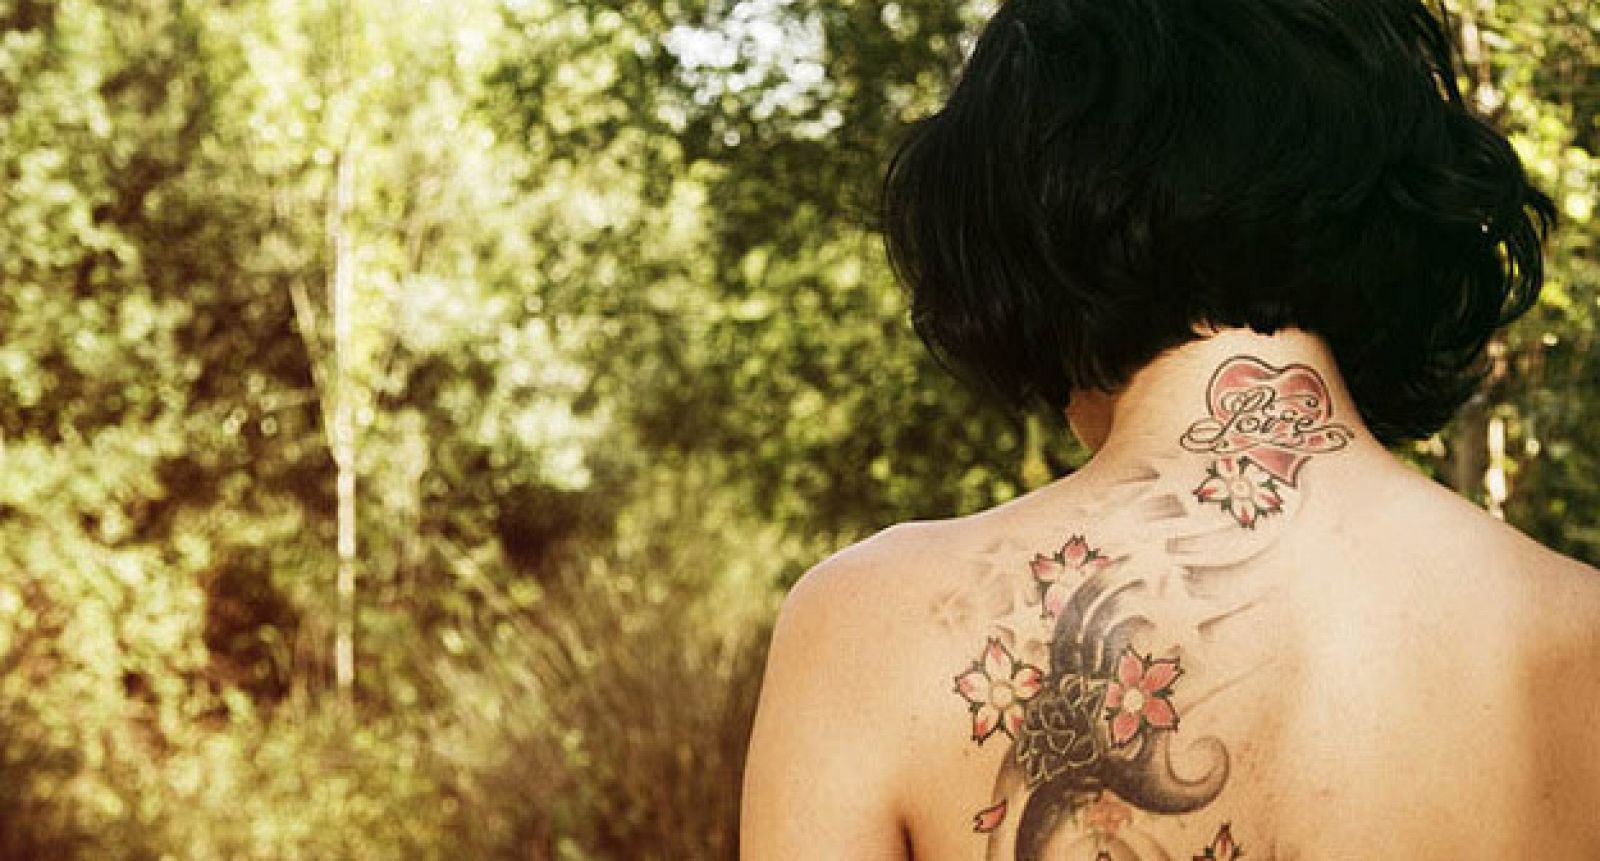 Los tatuajes se hacen depositando la tinta en la dermis perforando con una aguja.